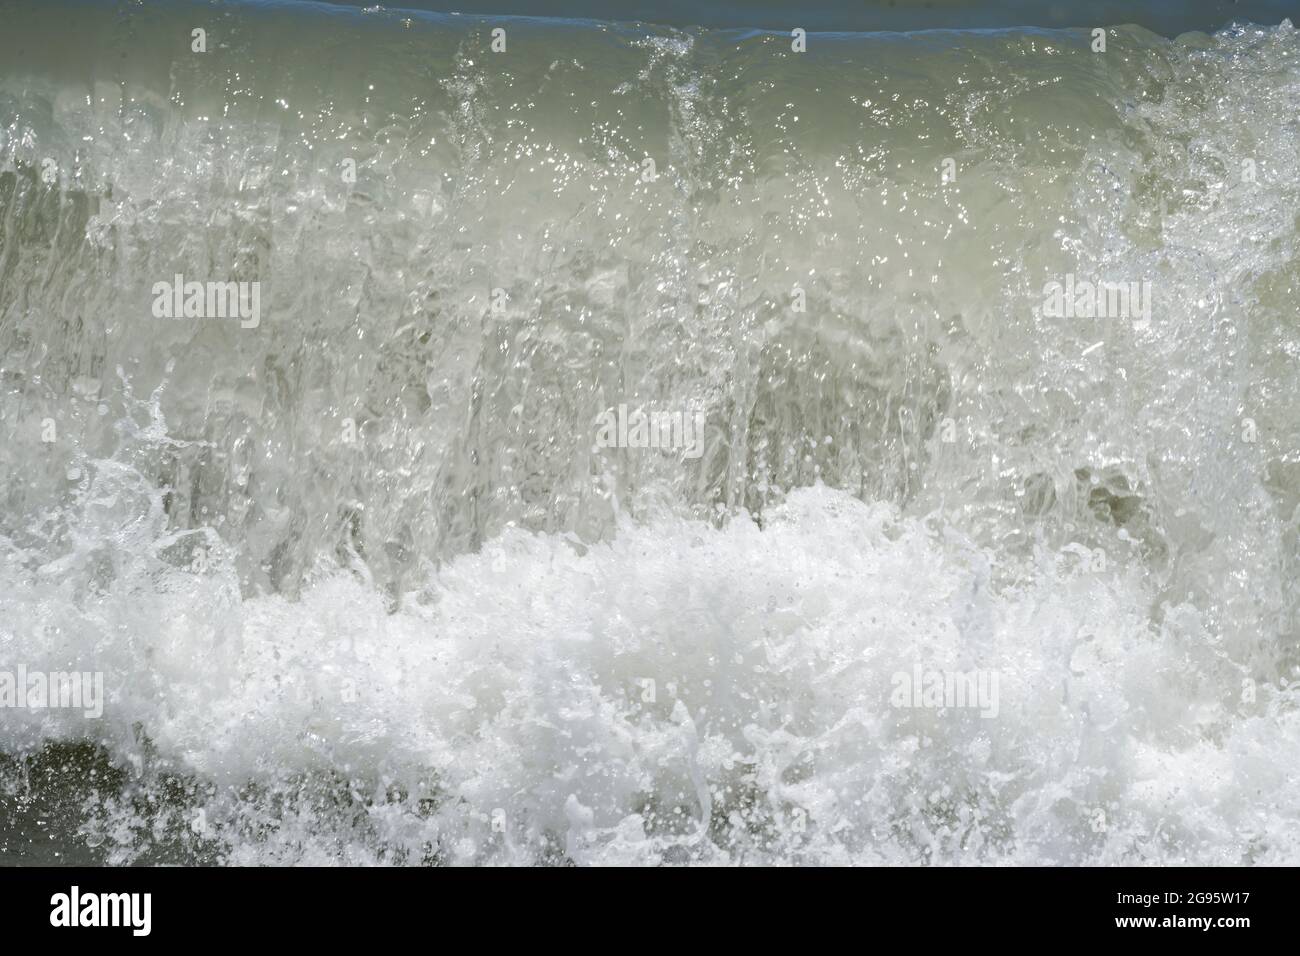 Sólo olas de mar en la playa durante el día Foto de stock